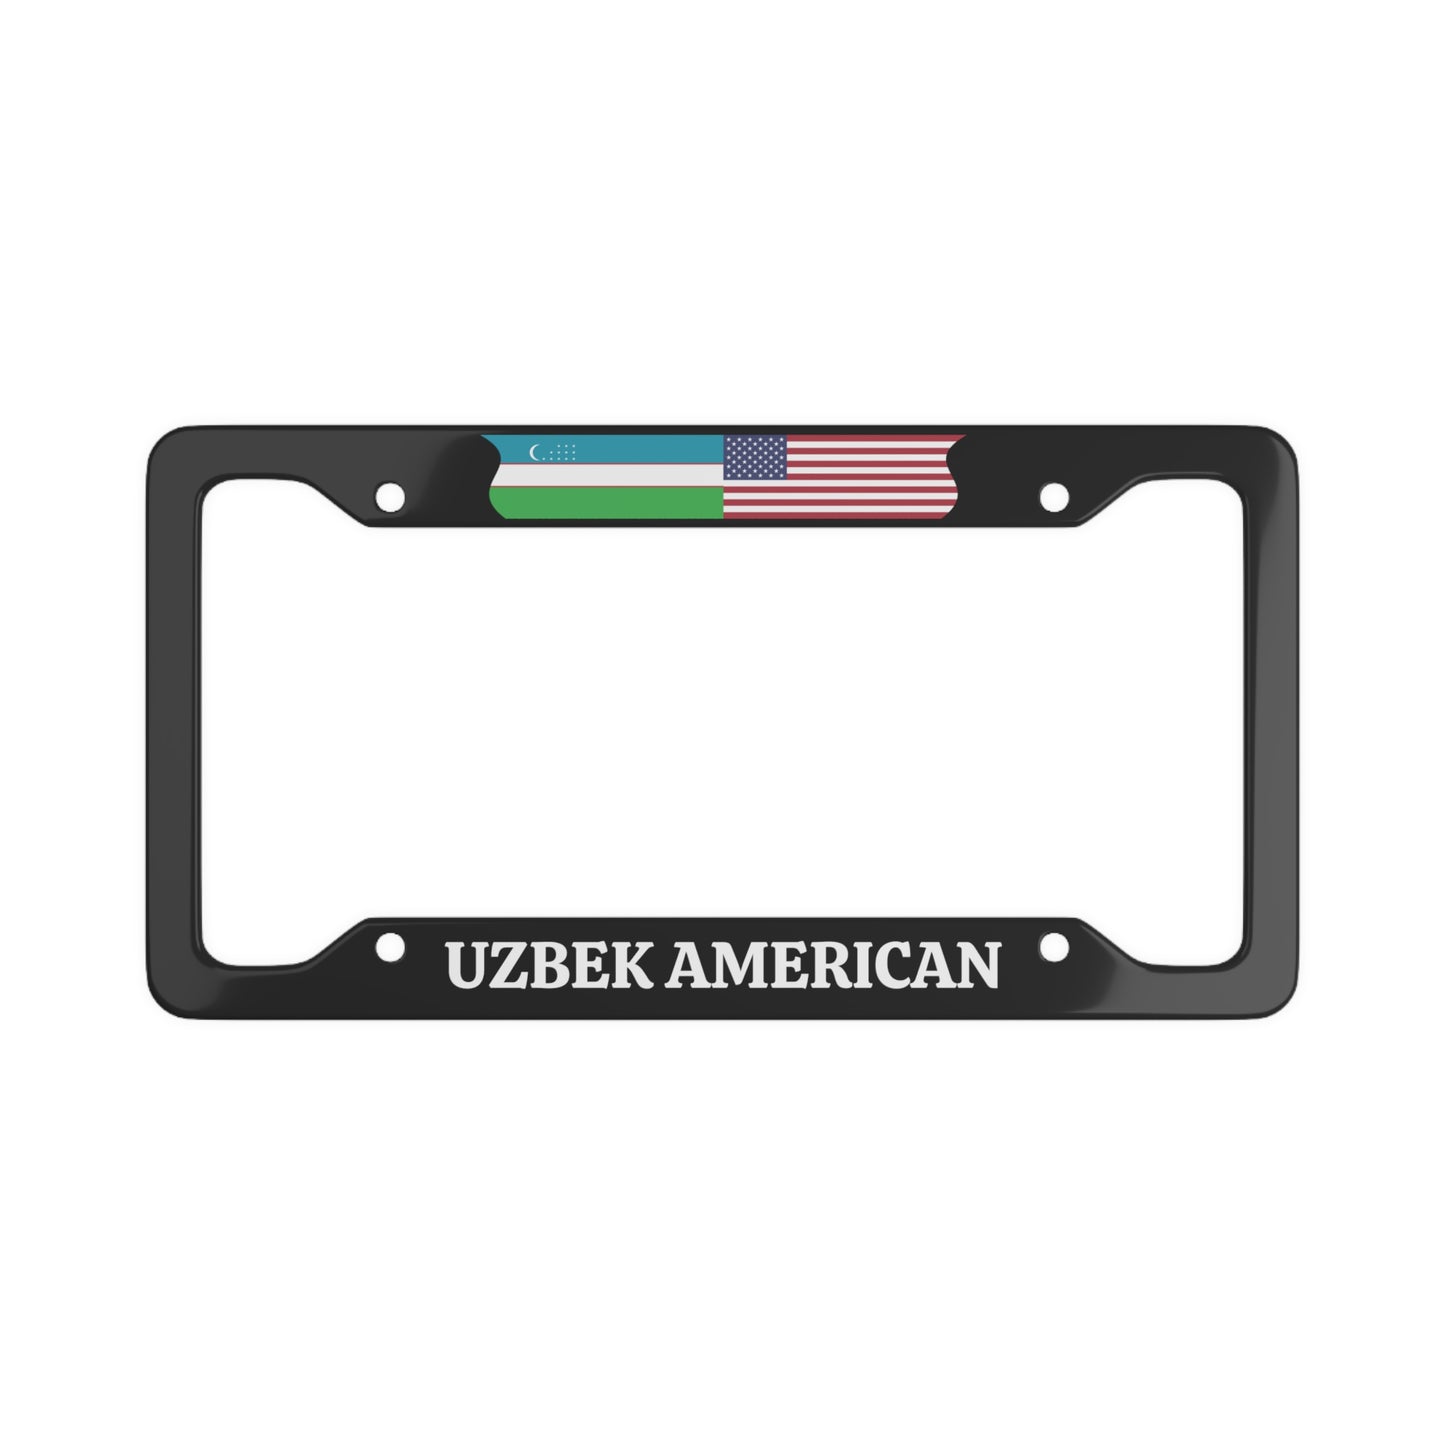 Uzbek American License Plate Frame